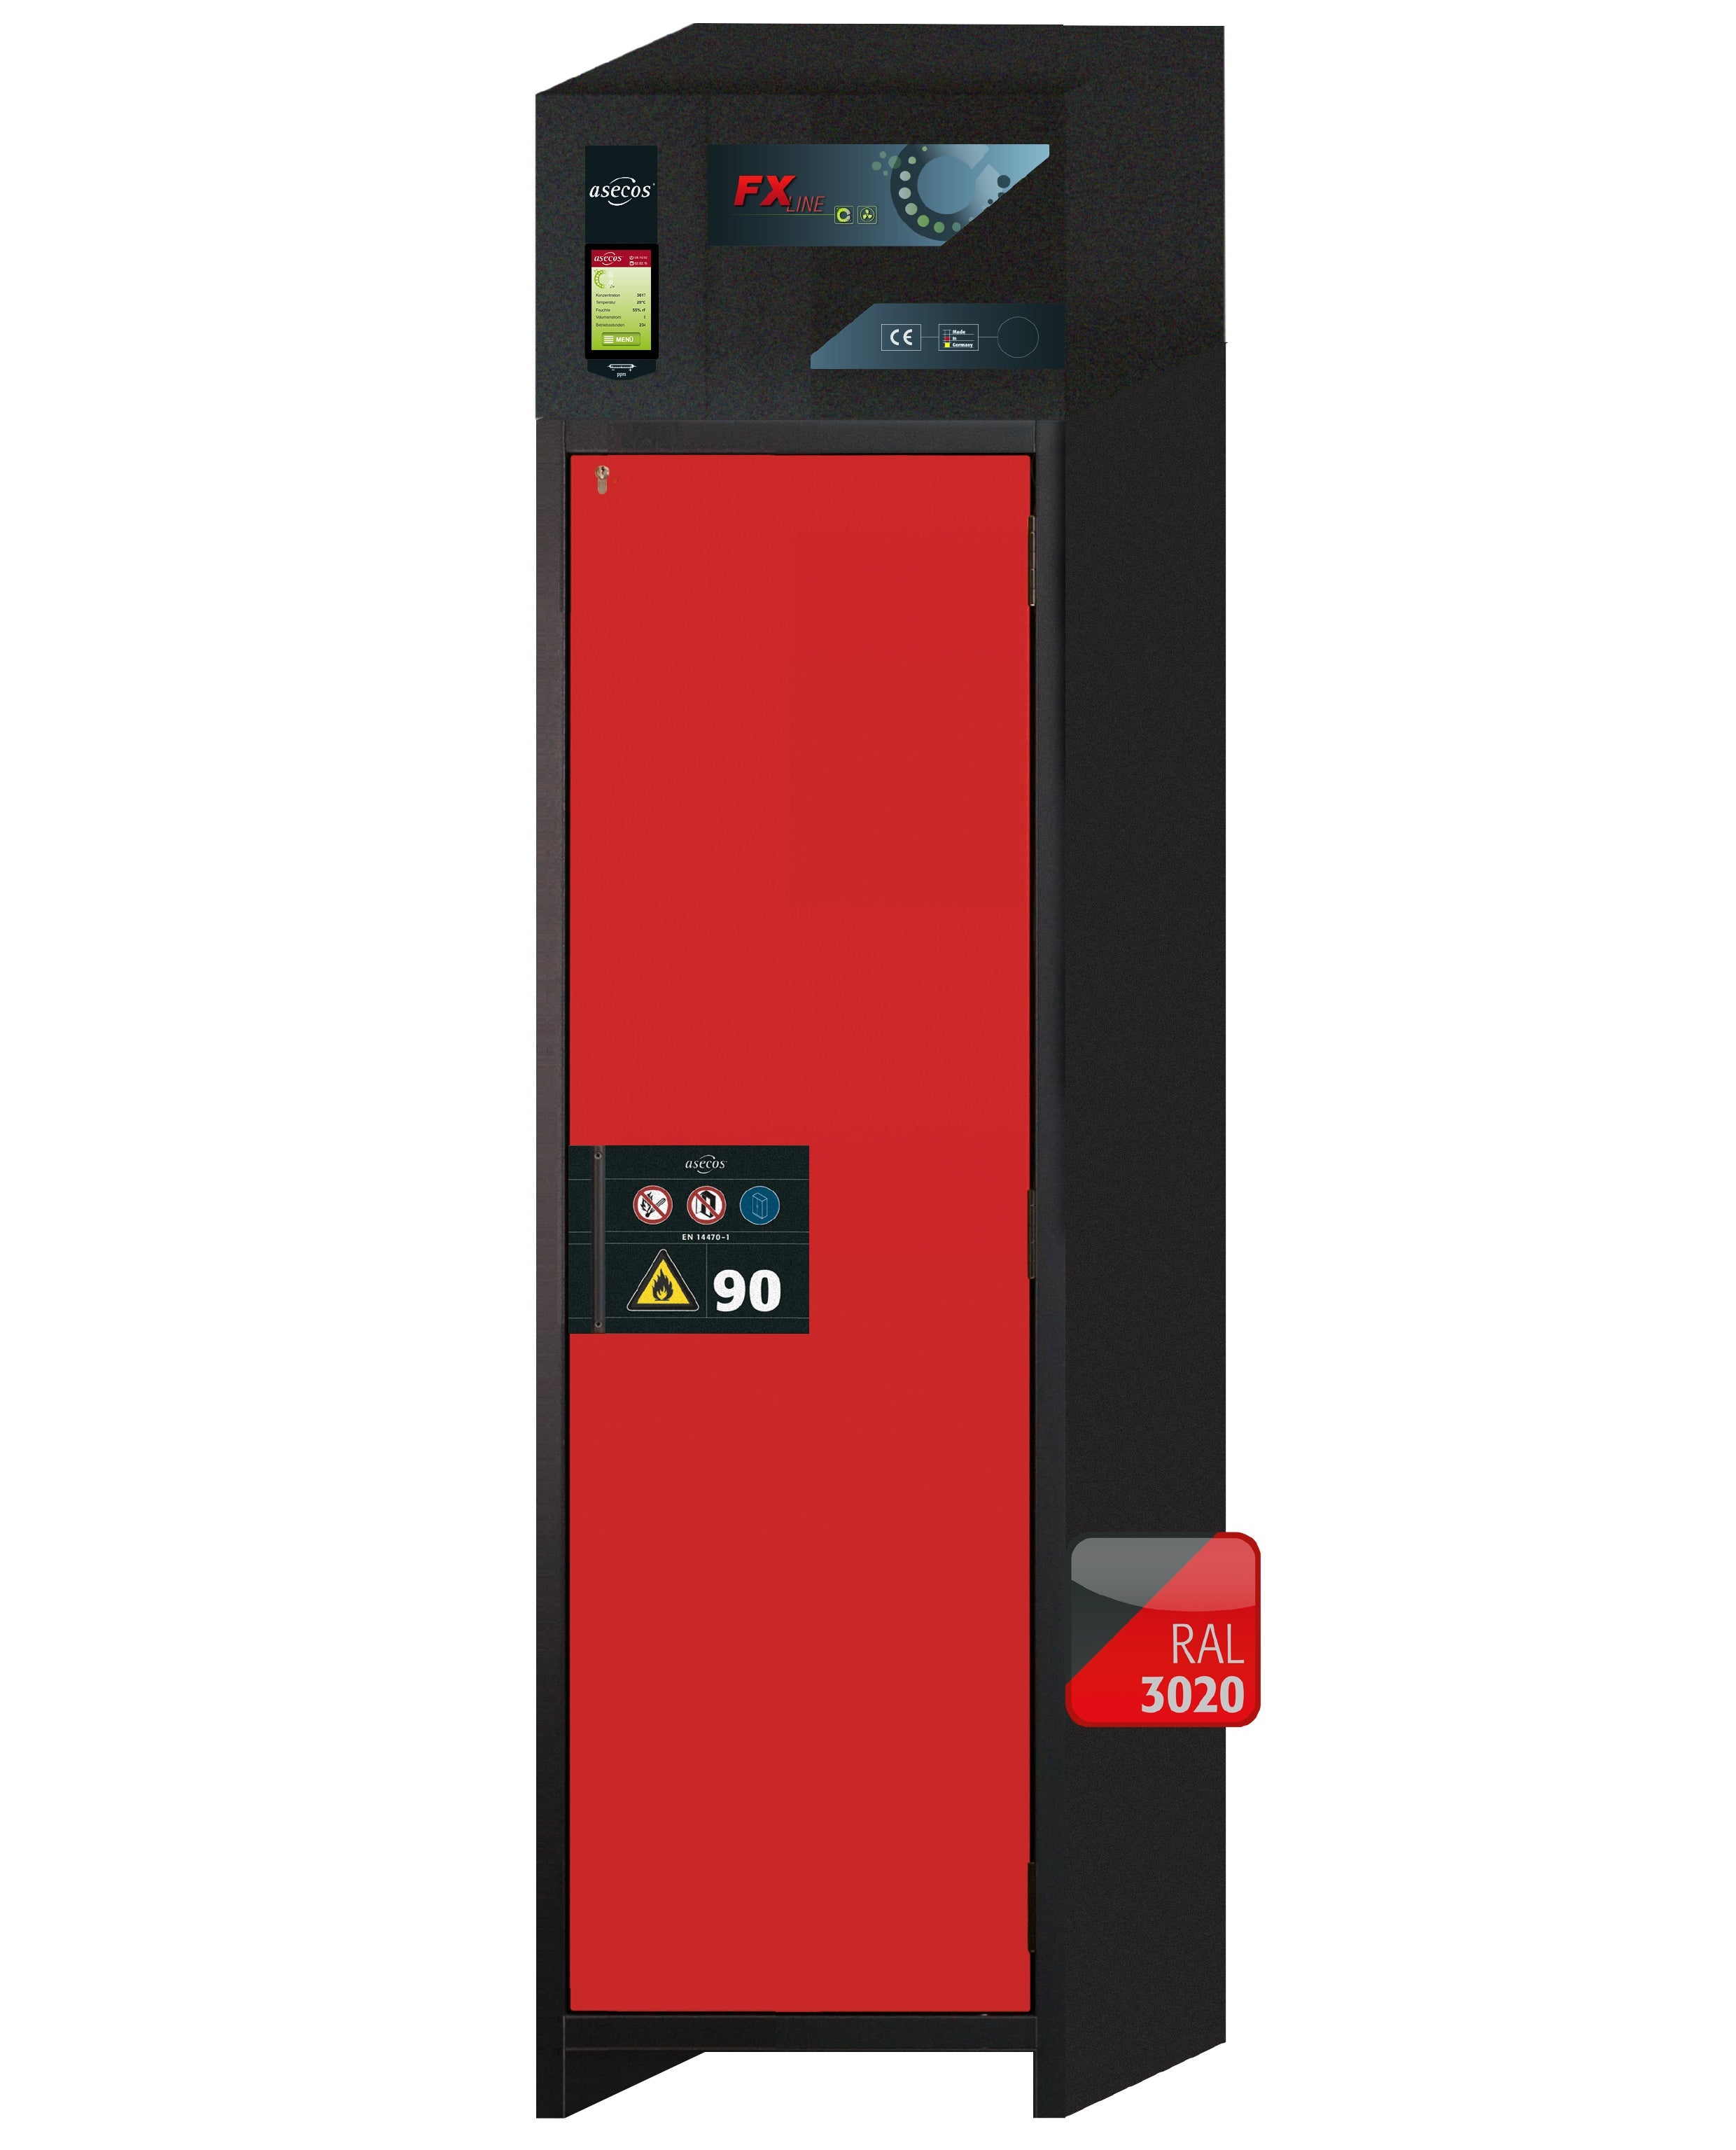 Armoire de filtration d'air de type 90 FX-PEGASUS-90 modèle FX90.229.060.WDACR en rouge signalisation RAL 3020 avec 2 étagères standard (acier inoxydable 1.4301)